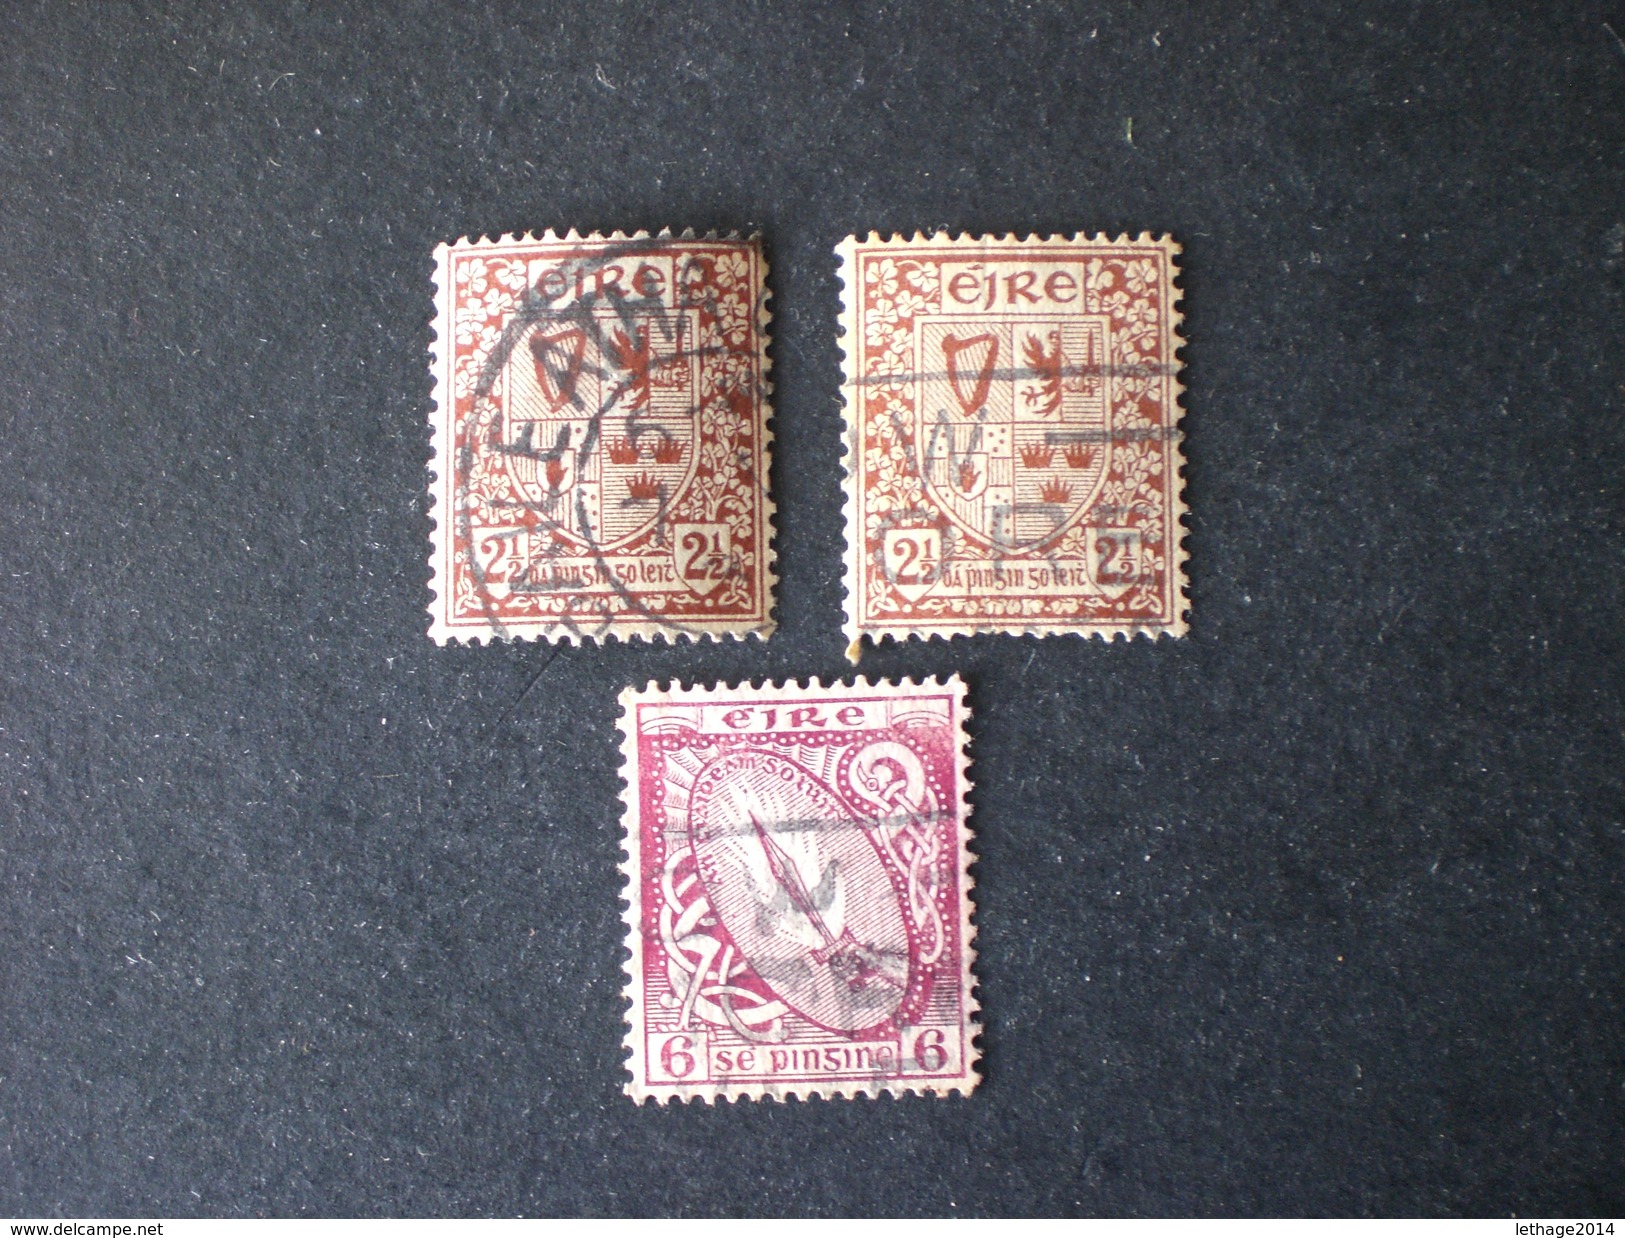 IRLANDA IRELAND 1922 New Daily Stamp WM 1 - Gebraucht